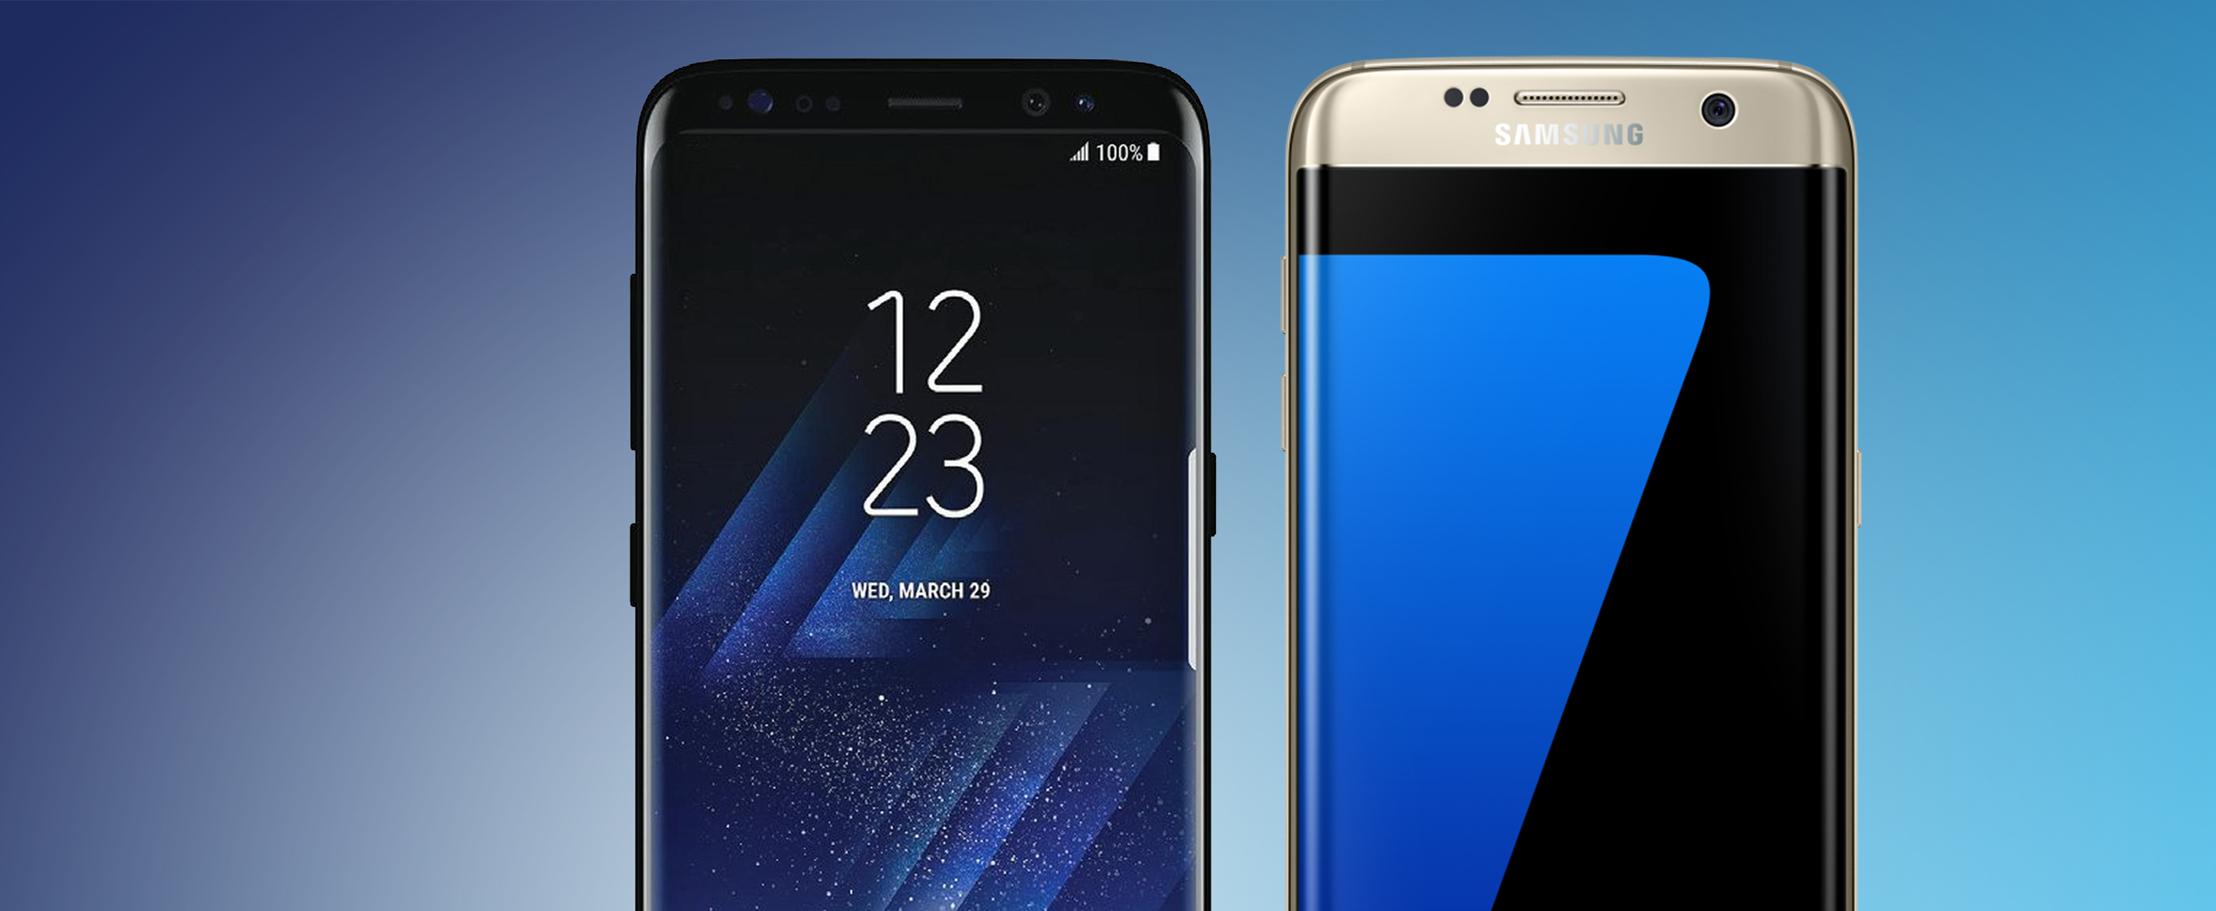 Сравнение Samsung Galaxy S8 и Samsung Galaxy S7: что в нём было улучшено?